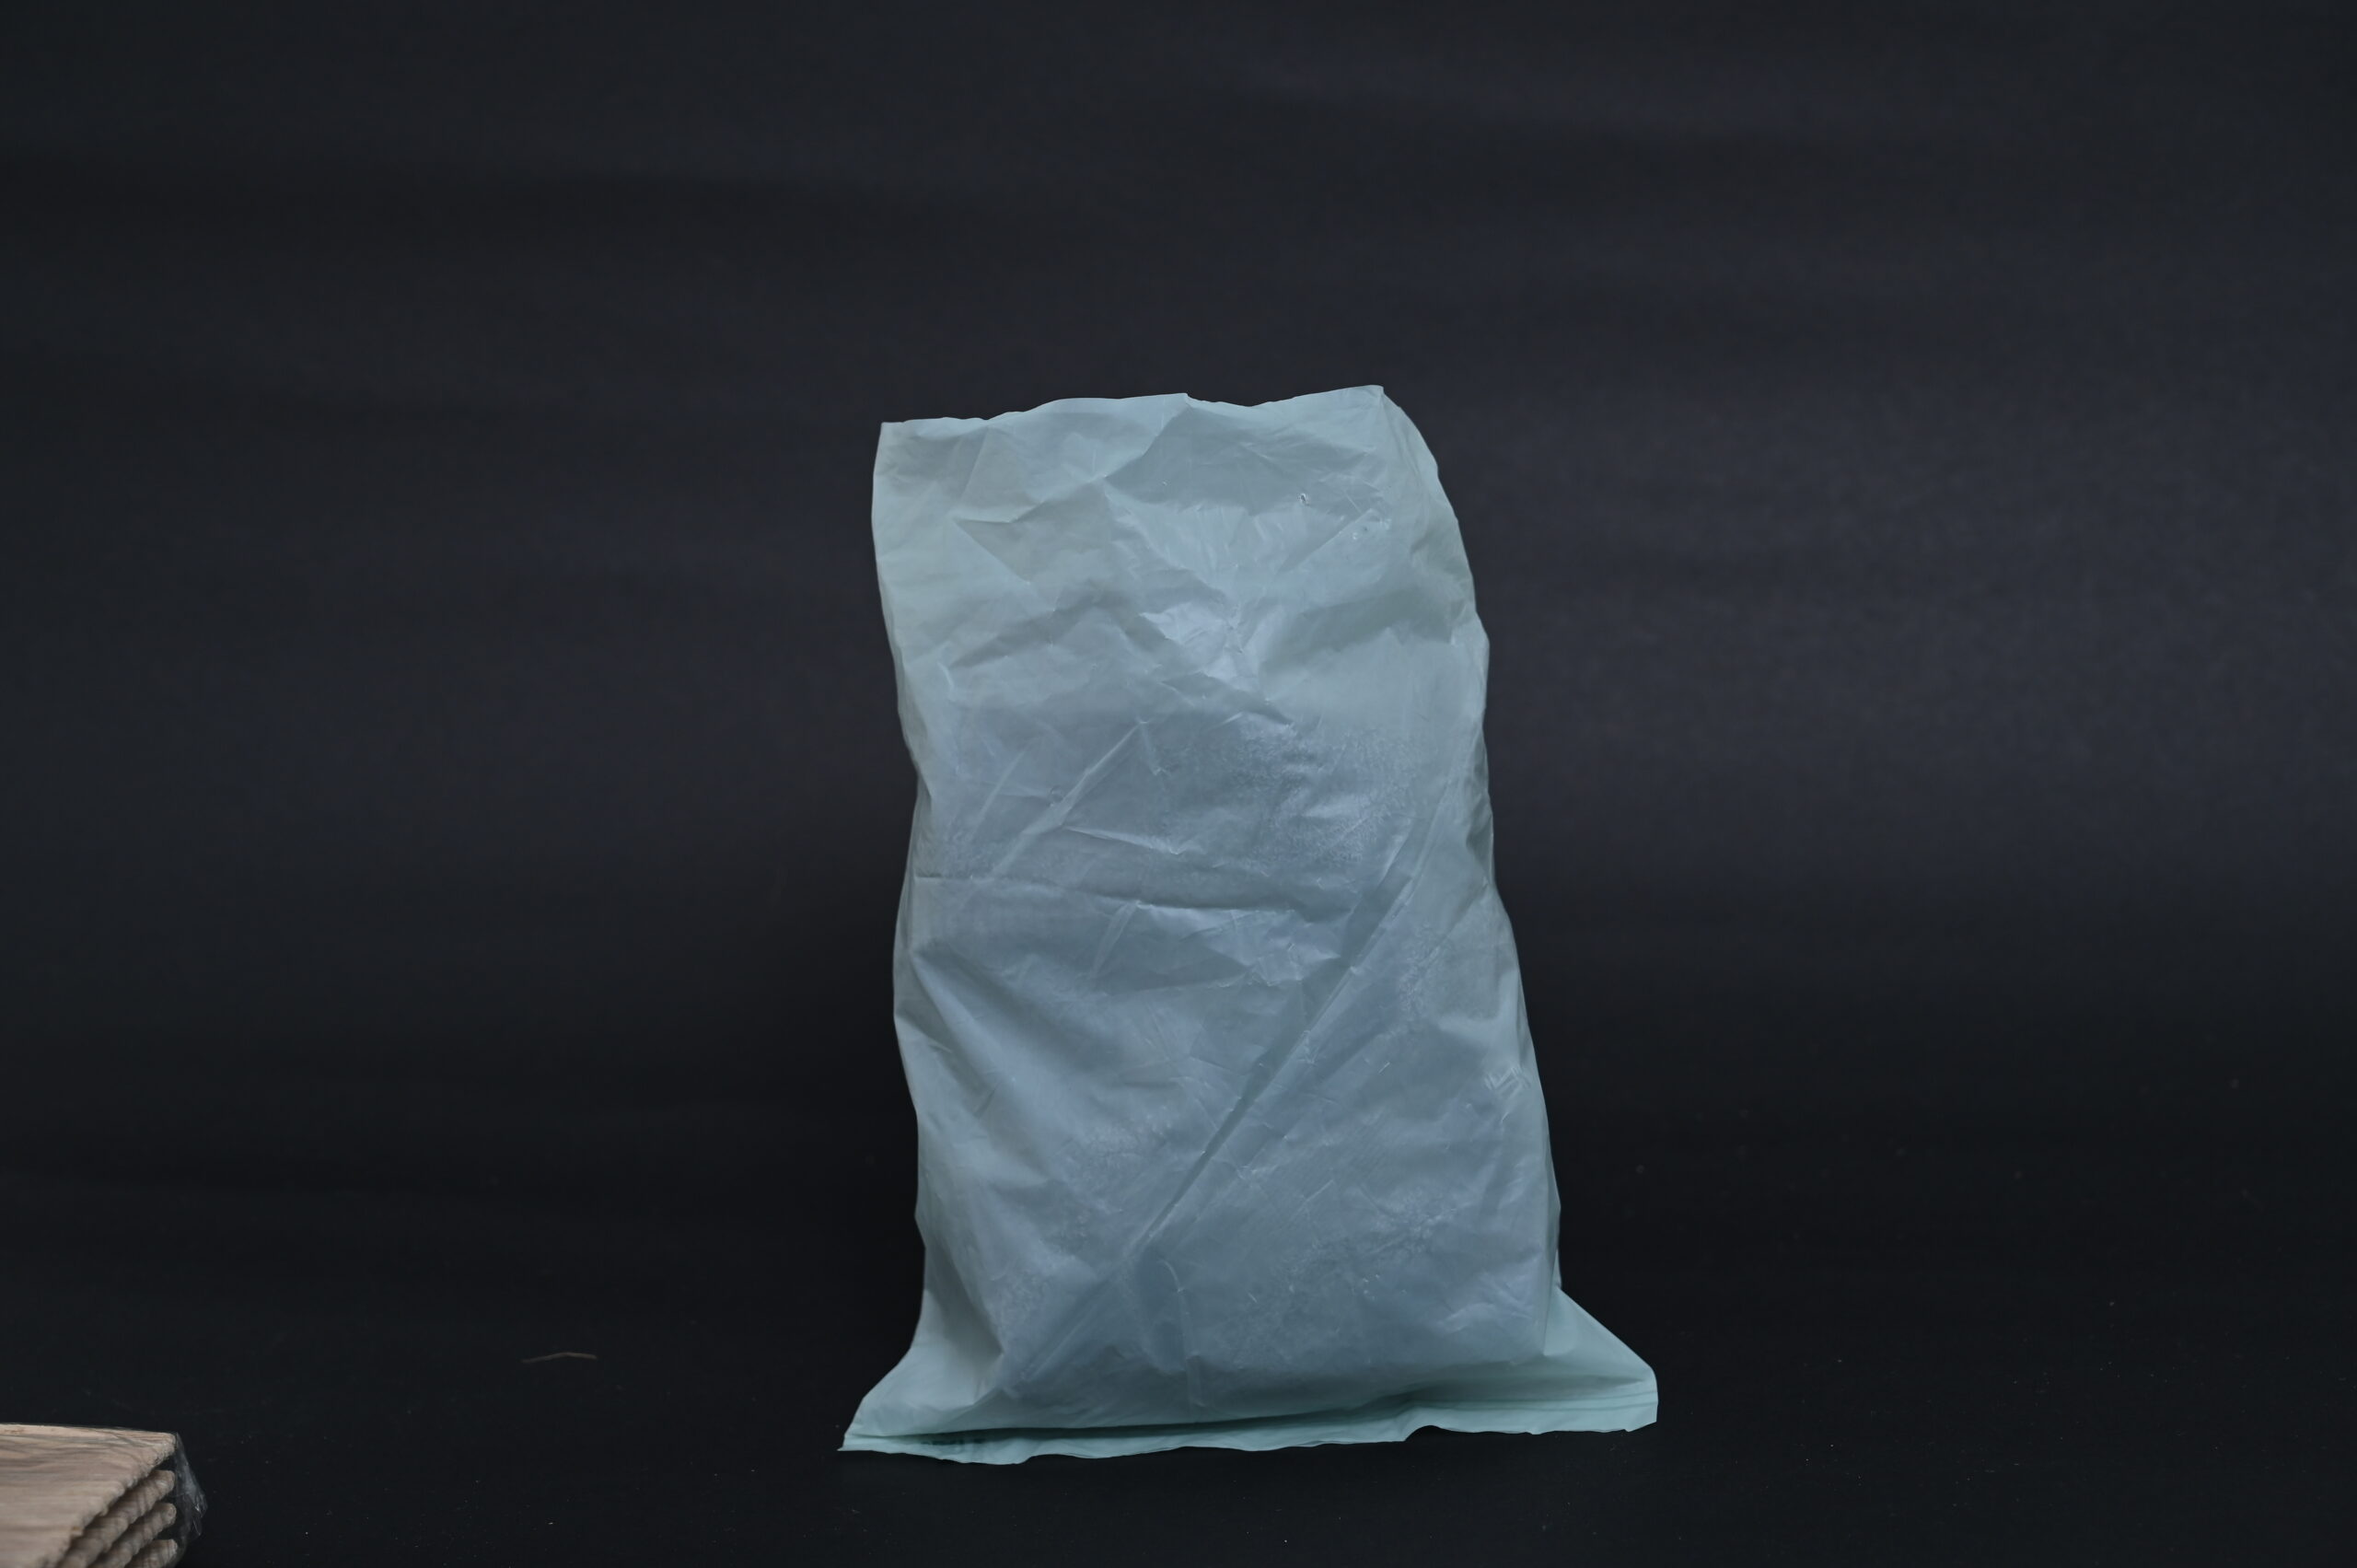 LivingBasics Premium Double Net Vegetable Bags For Fridge / Refrigerat –  LIVINGBASICS